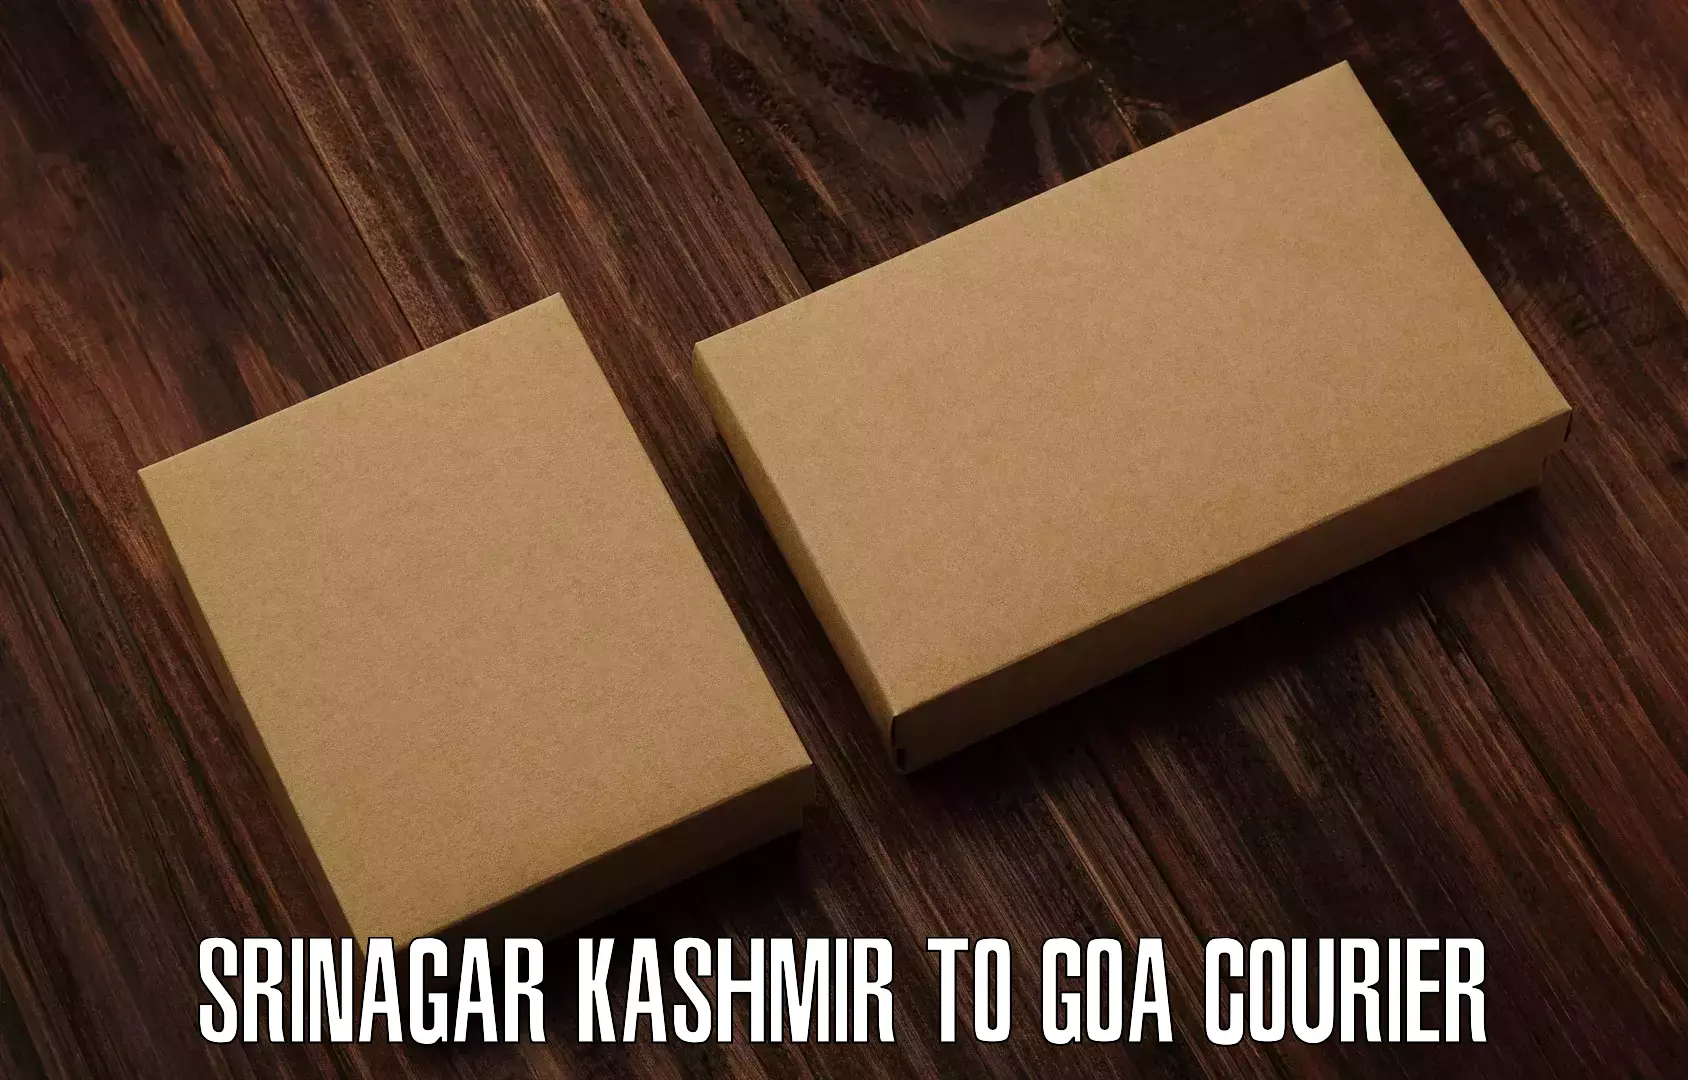 Special handling courier Srinagar Kashmir to Vasco da Gama